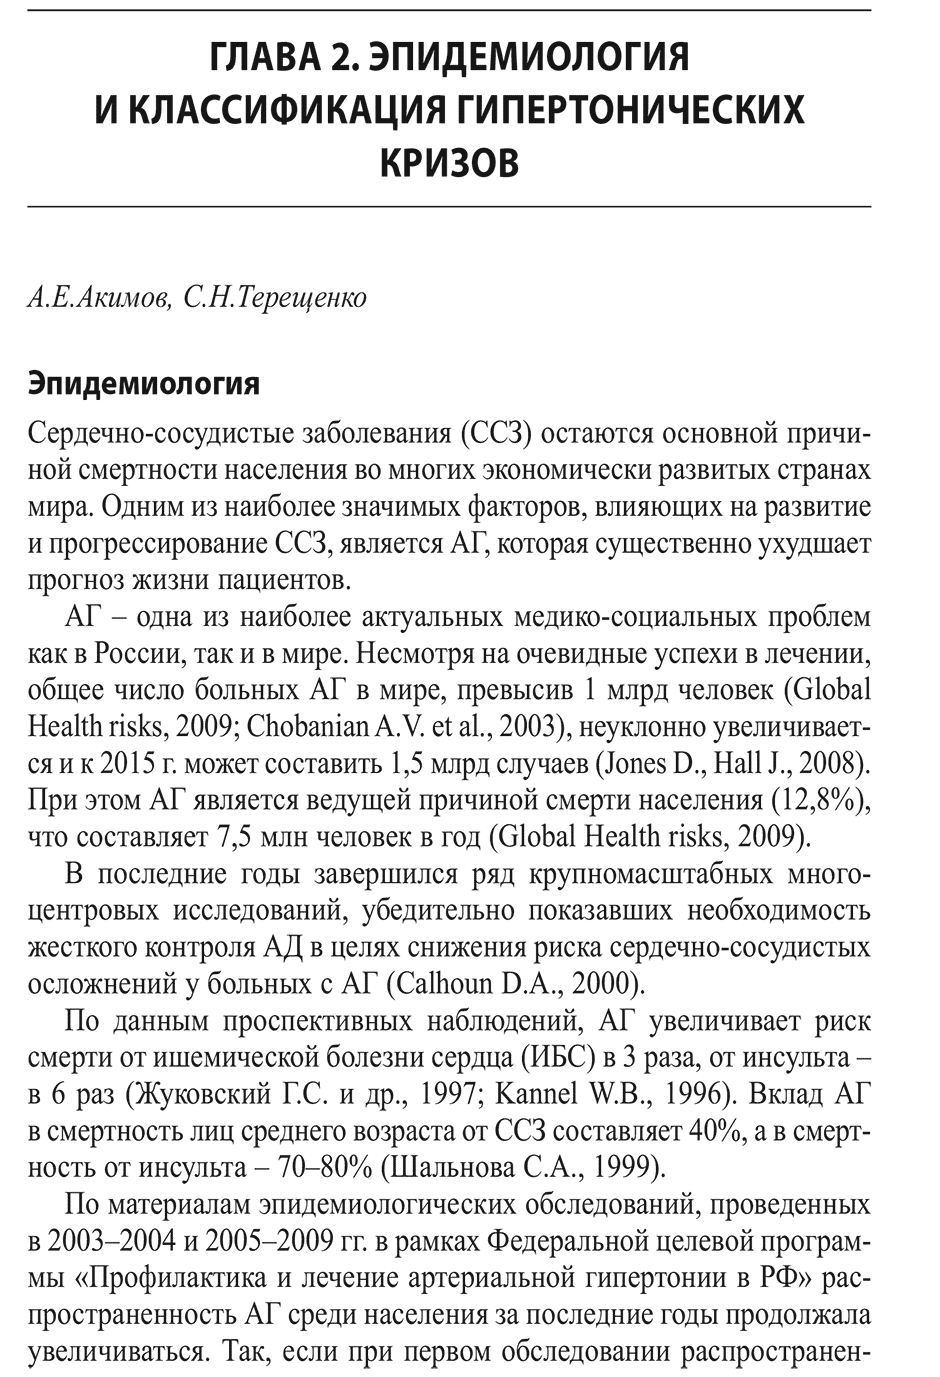 Пример страницы из книги "Гипертонические кризы" - С. Н. Терещенко